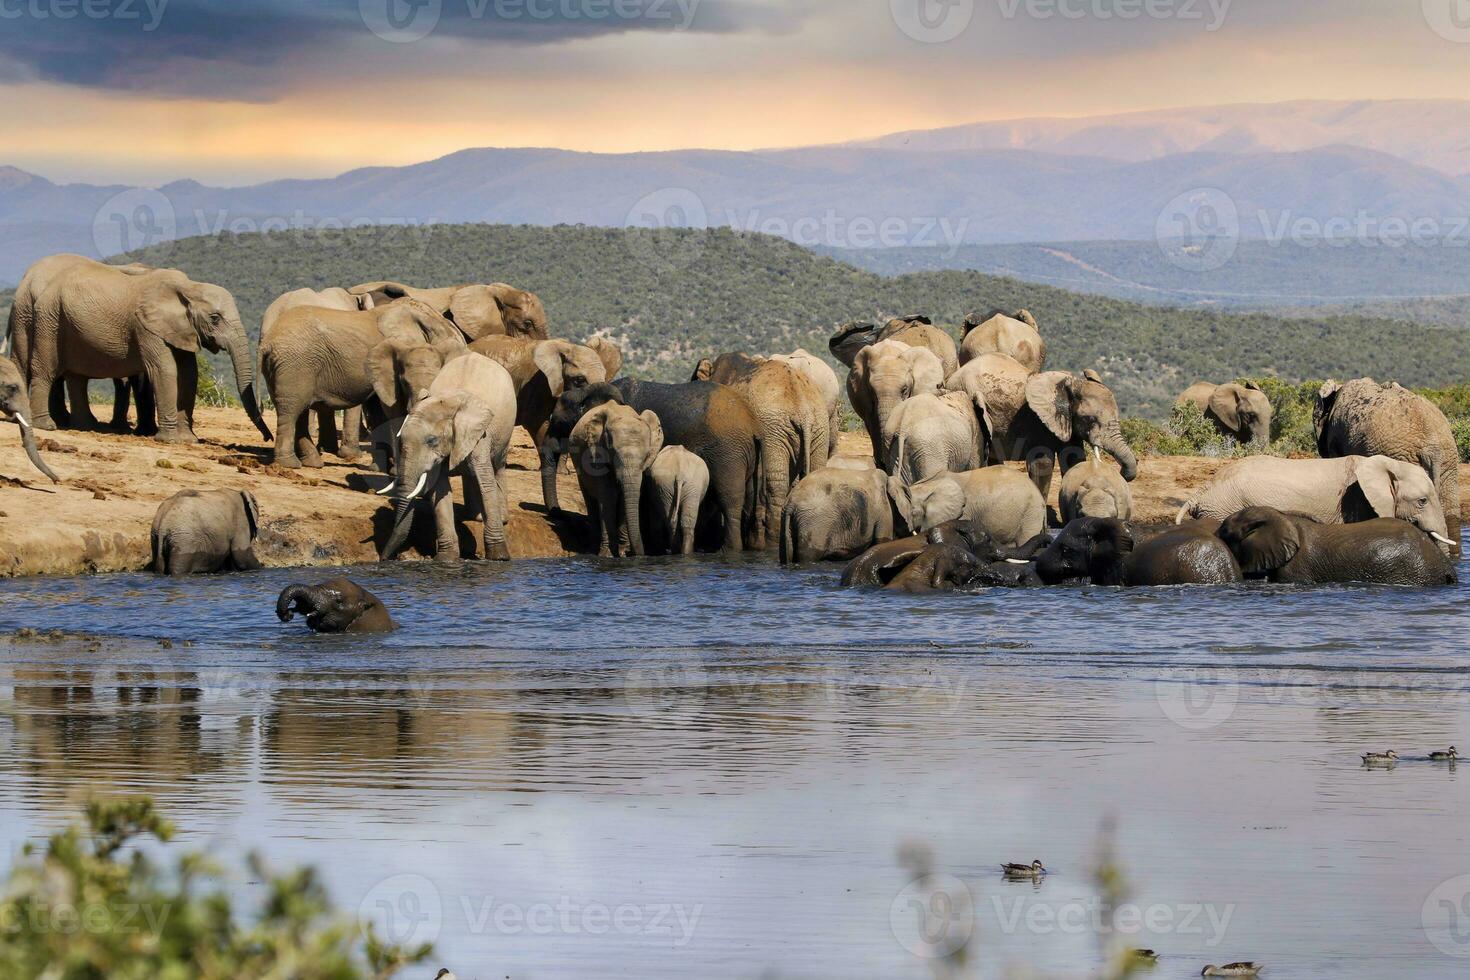 elefantes dentro addo nacional parque, sul África foto